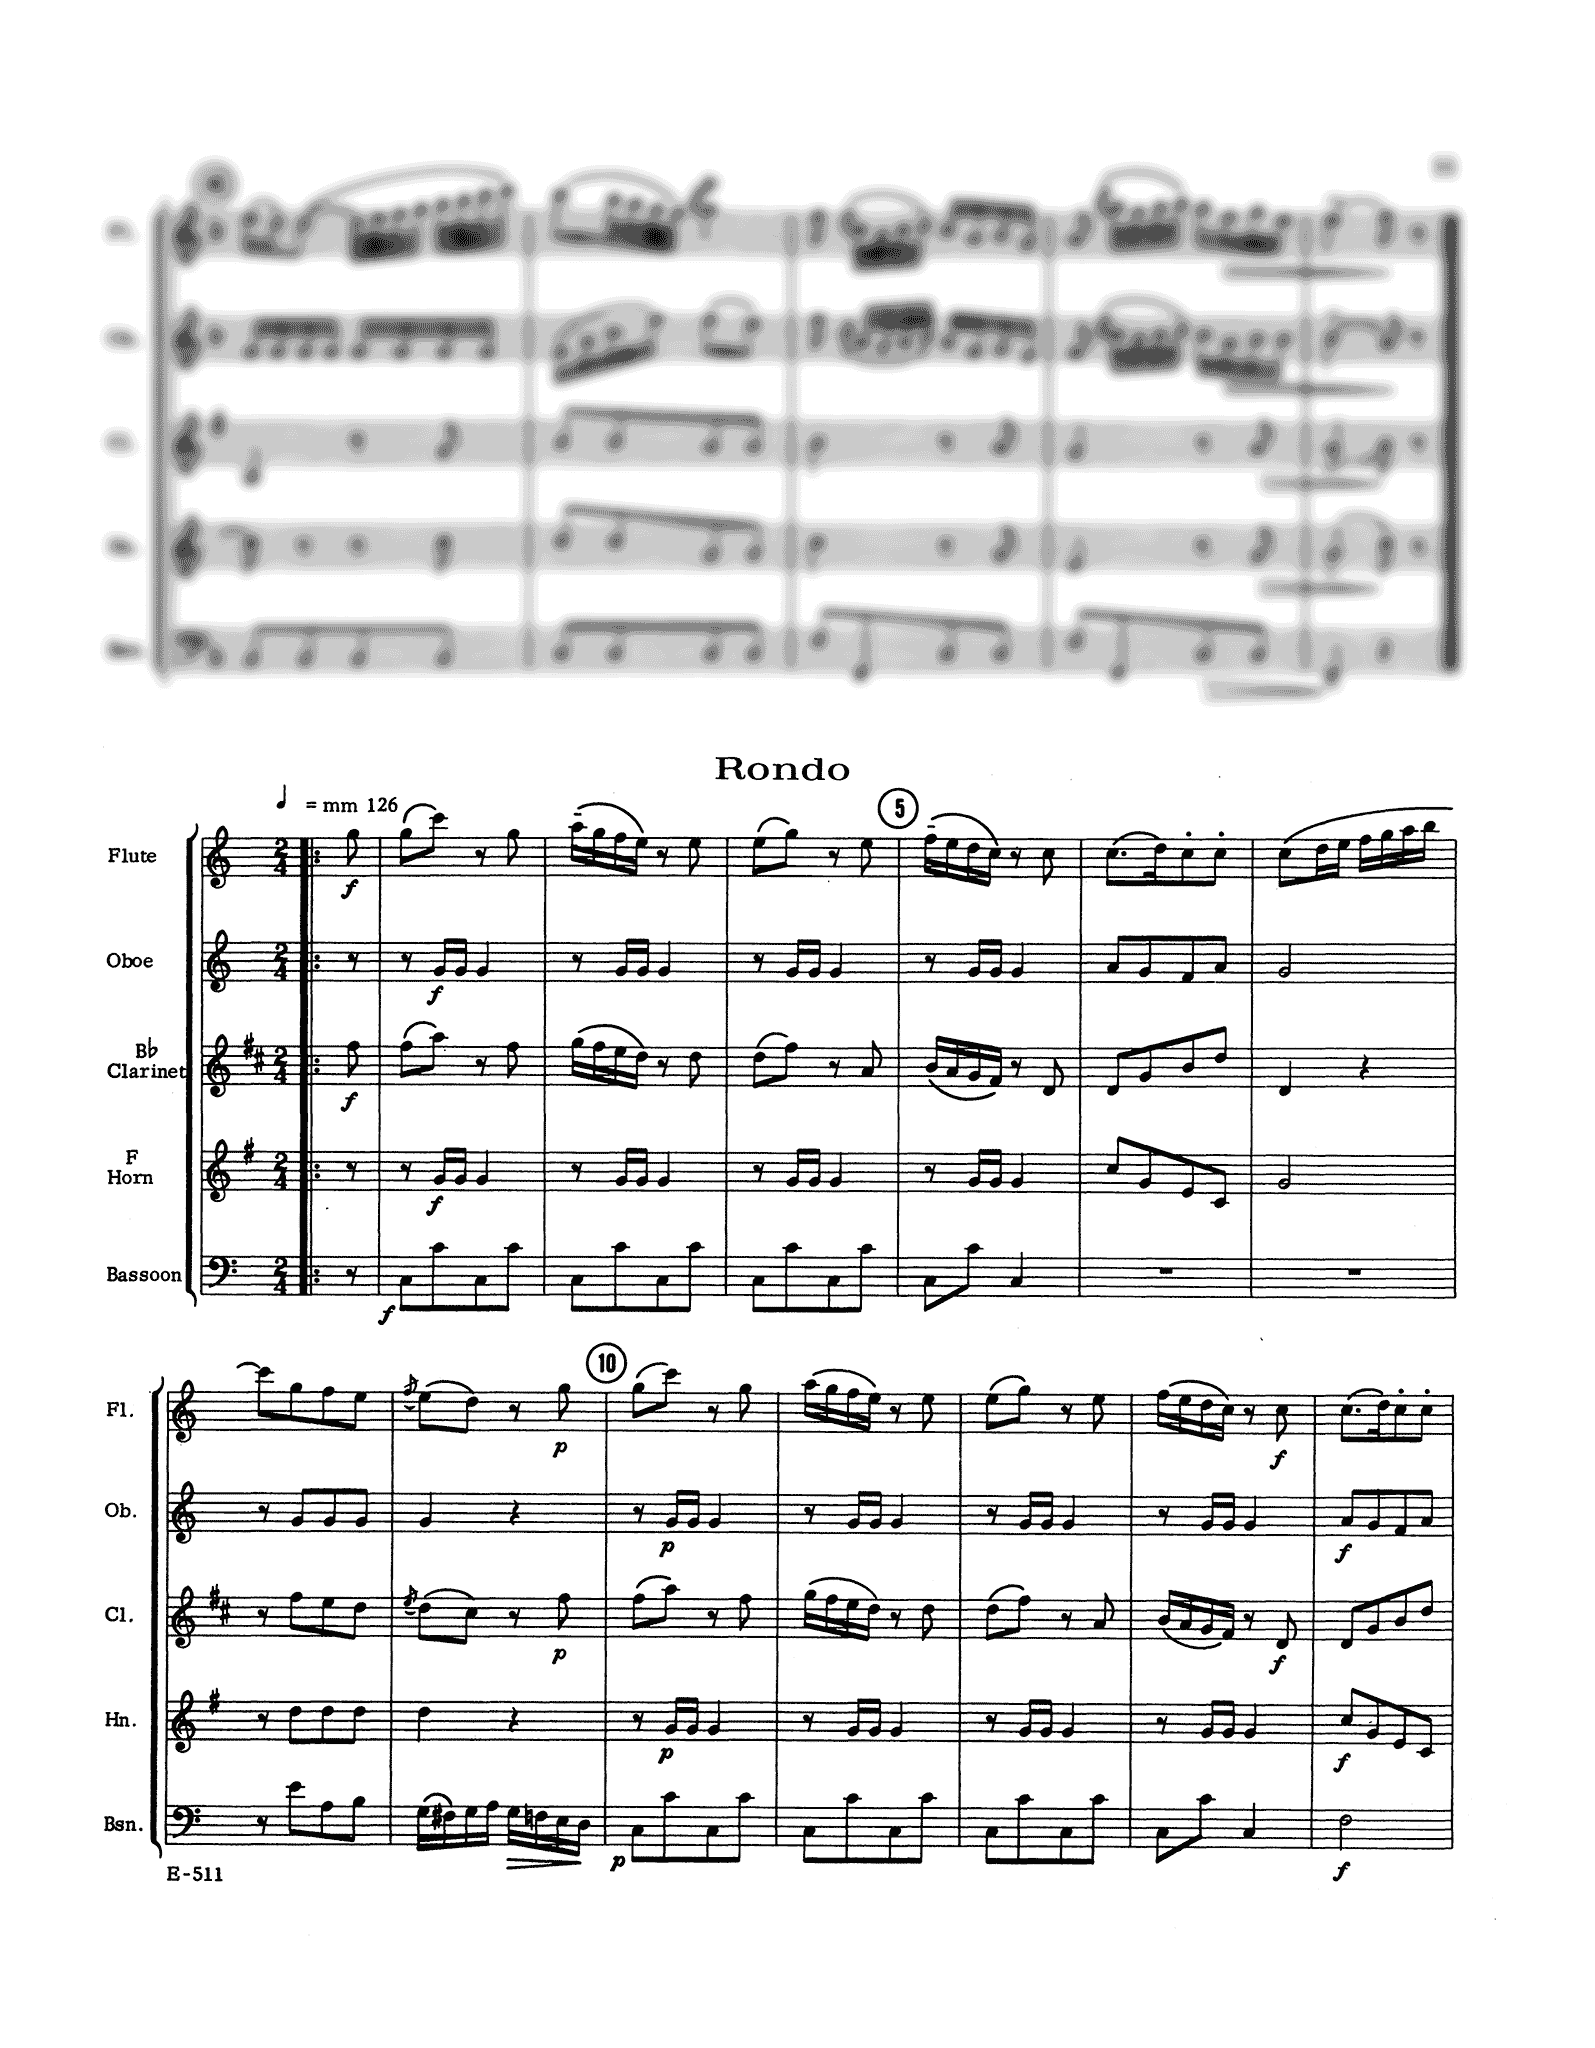 J. C. Bach Military Quintet No. 3 W. B81 wind quintet arrangement - Movement 3